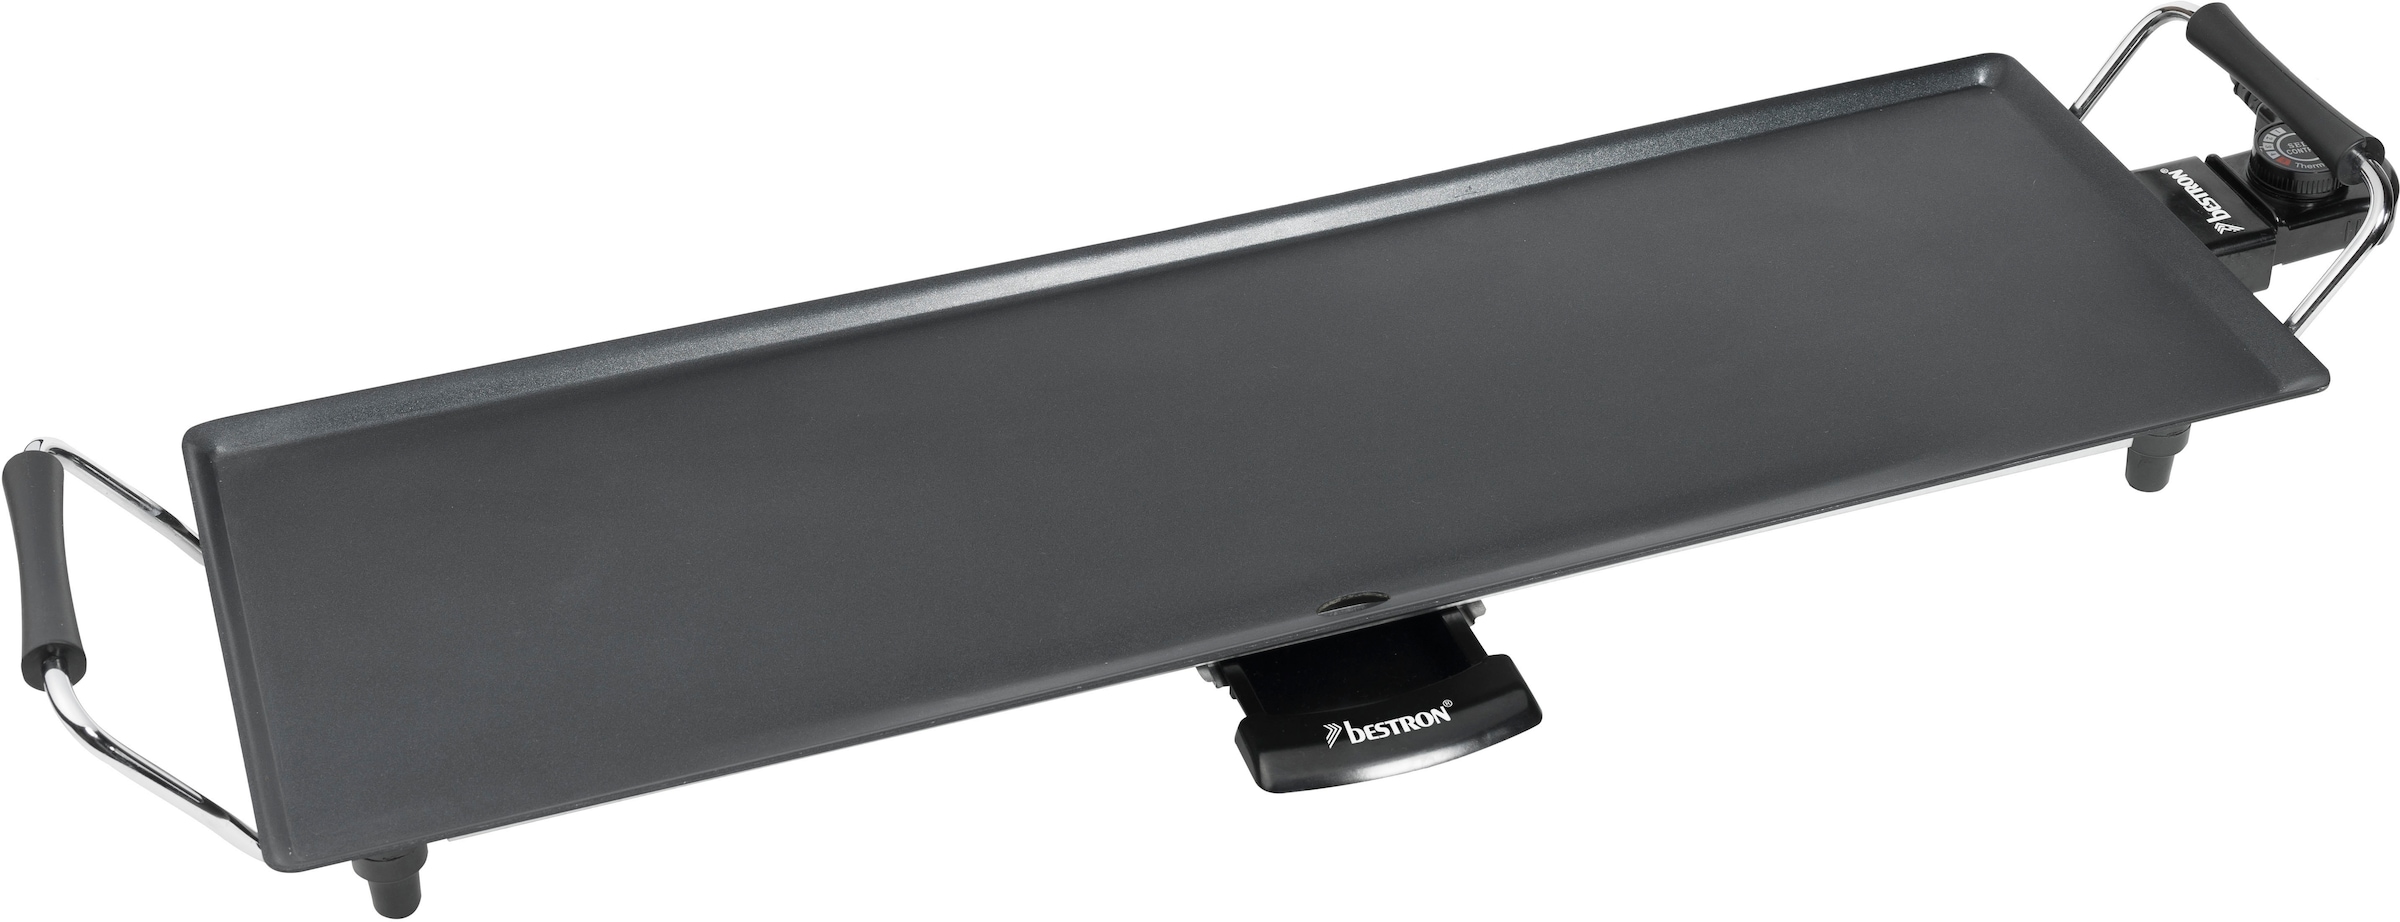 bestron Tischgrill »ABP603 elektrische XL Planchagrillplatte«, 1000 W, mit Antihaftbeschichtung, Schwarz